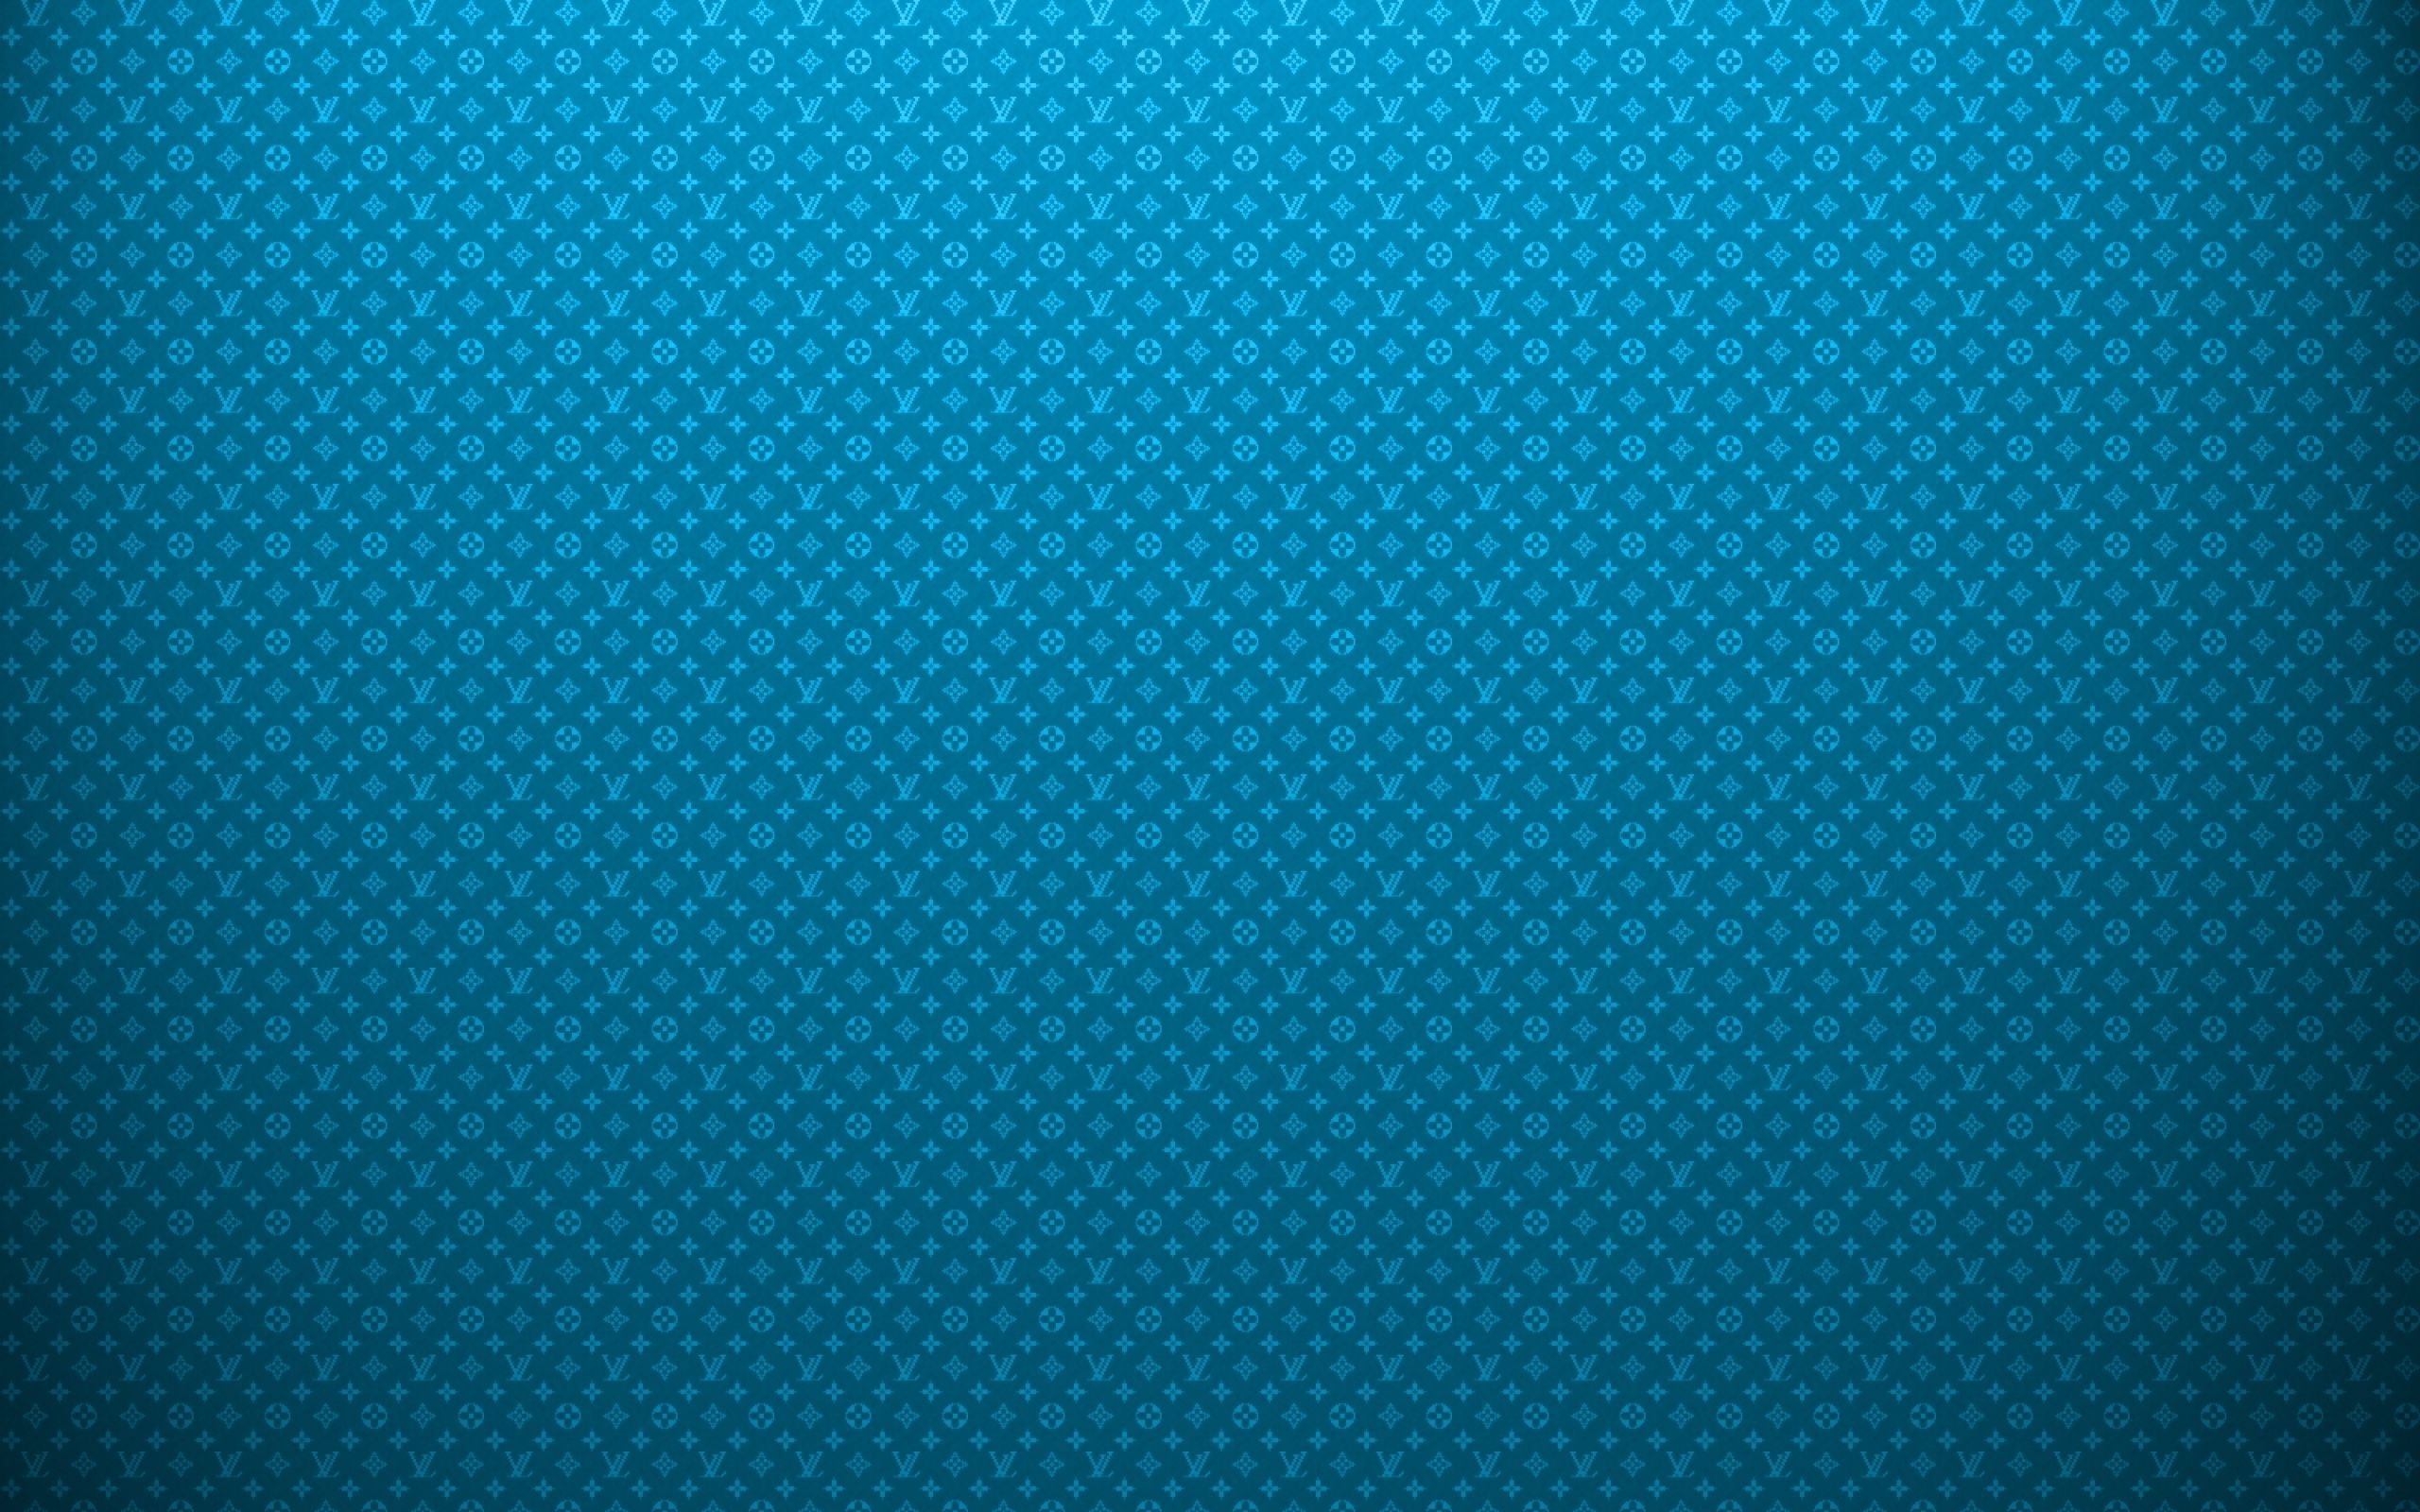 vuitton wallpaper blue